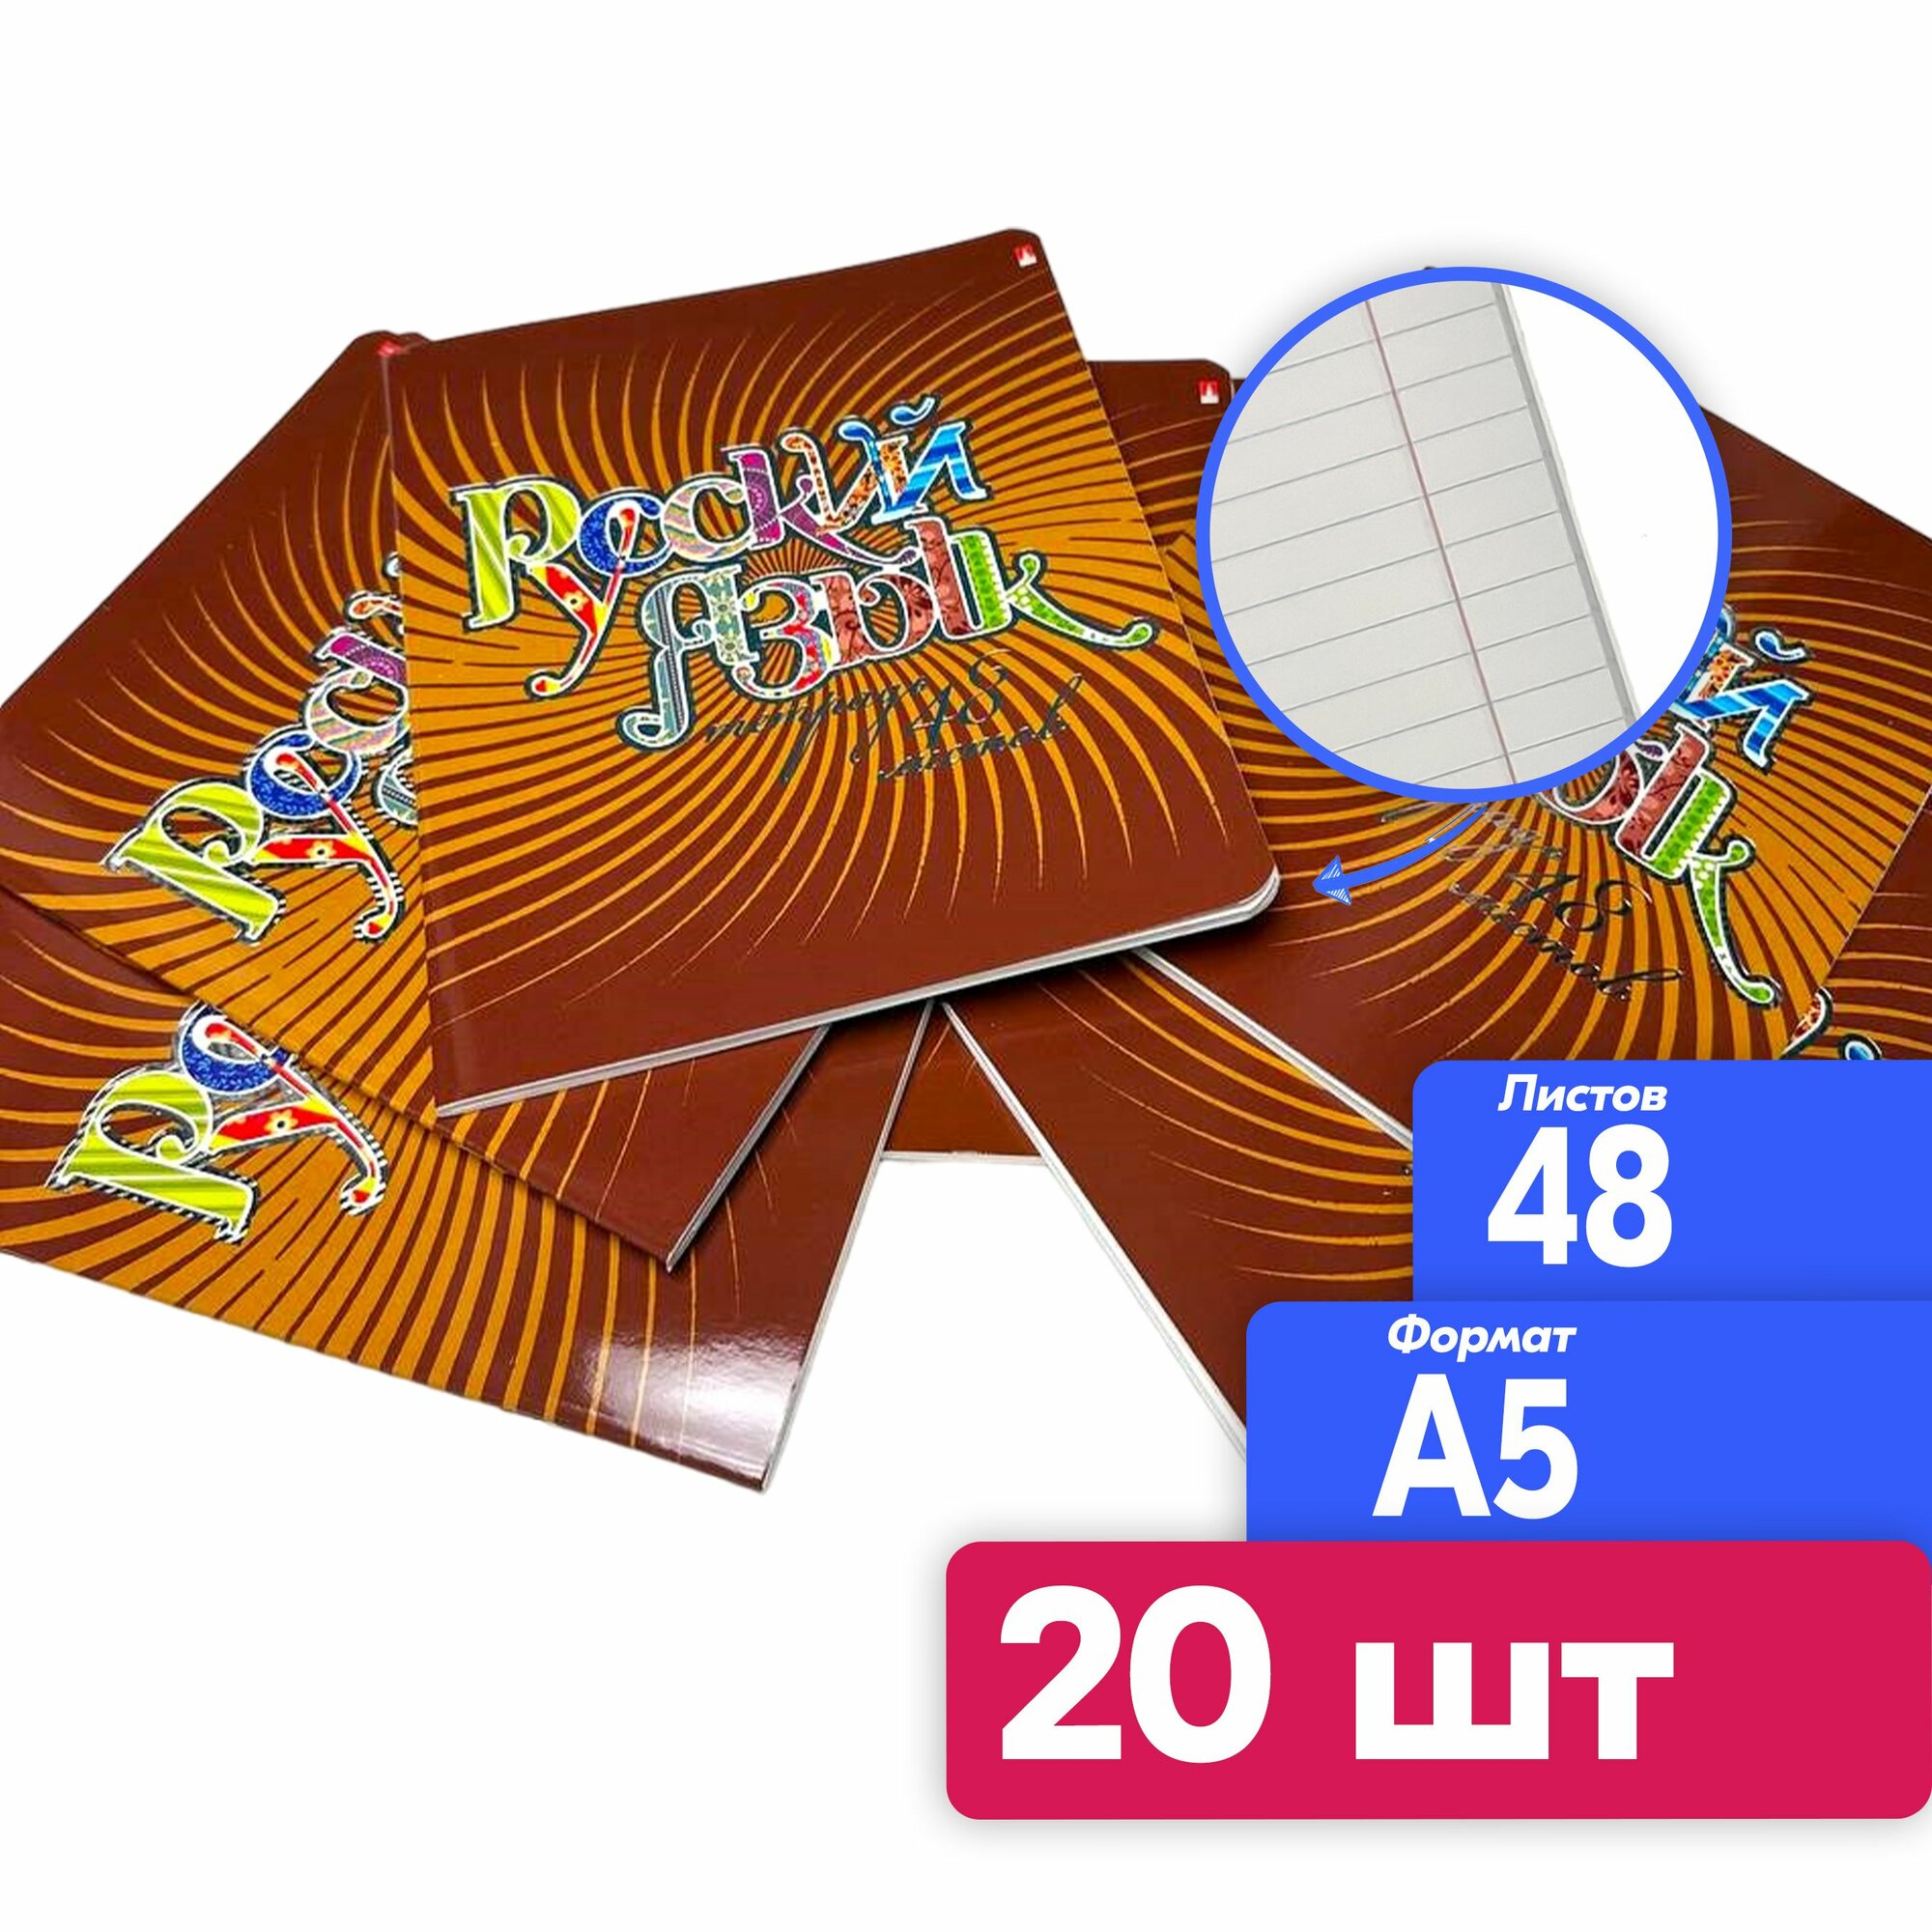 Тетрадь предметная русский язык, 20 штук, набор тетрадей 48 листов